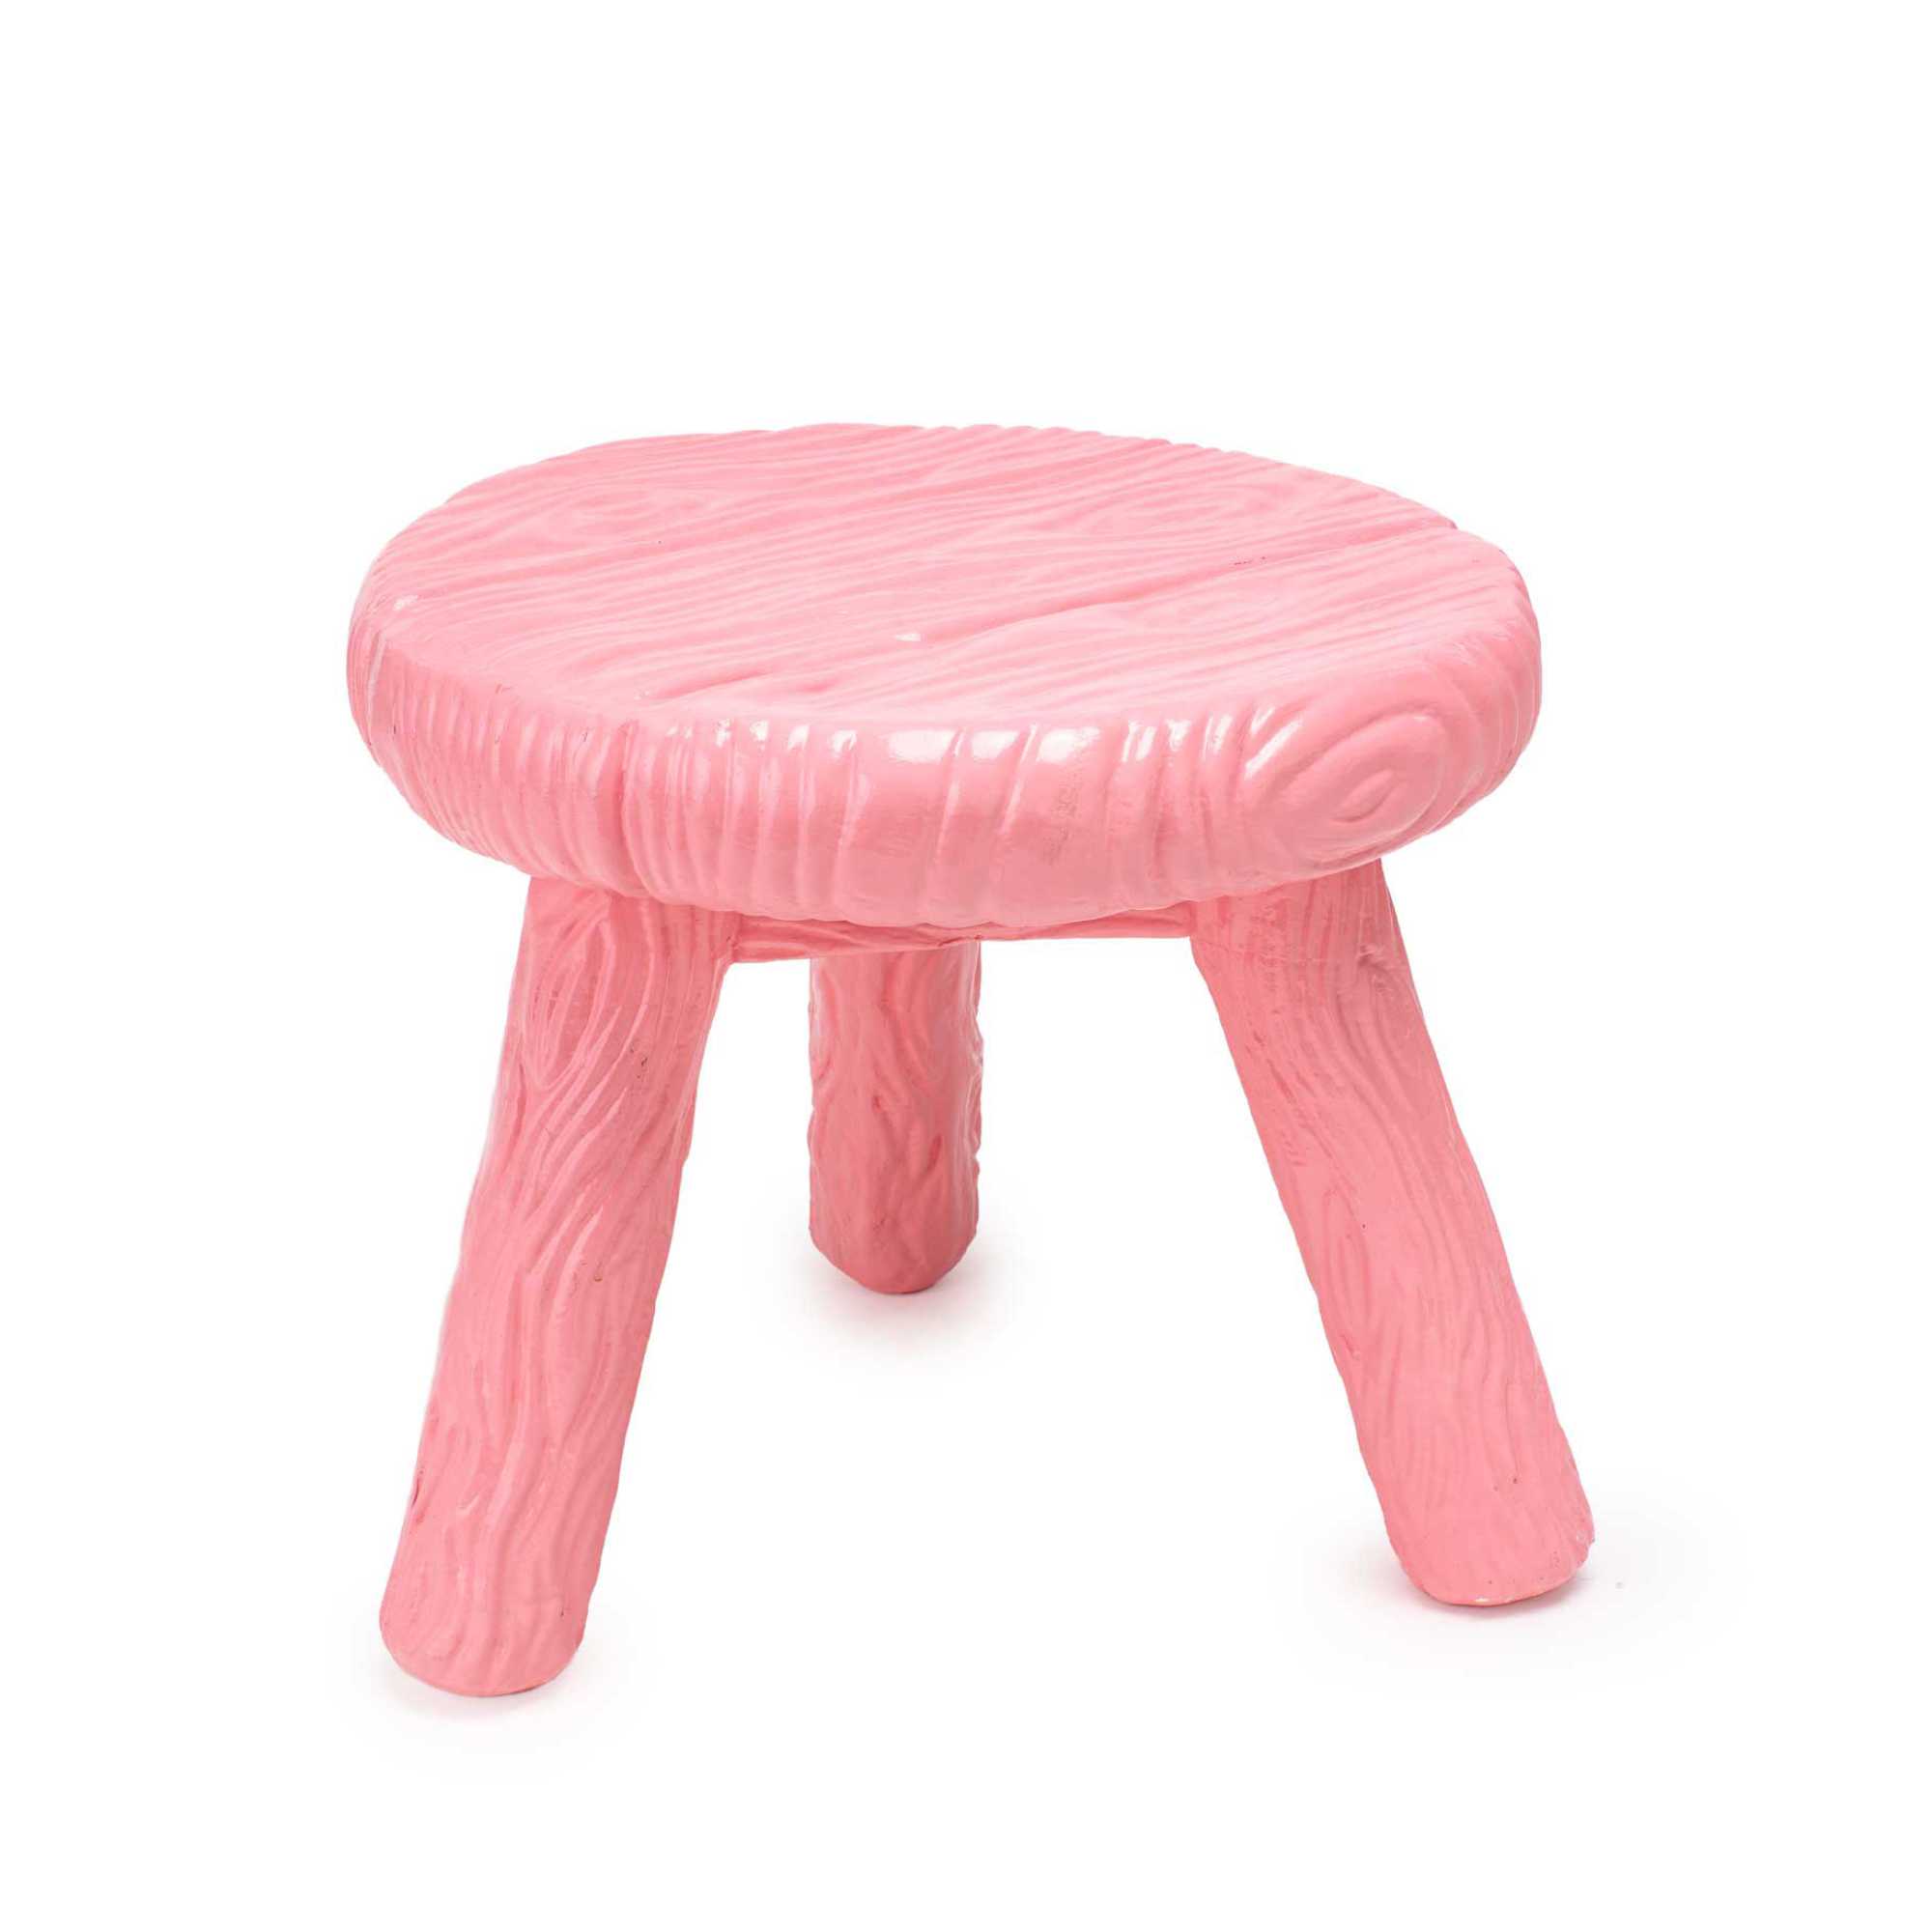 Seletti Milk stool, pink